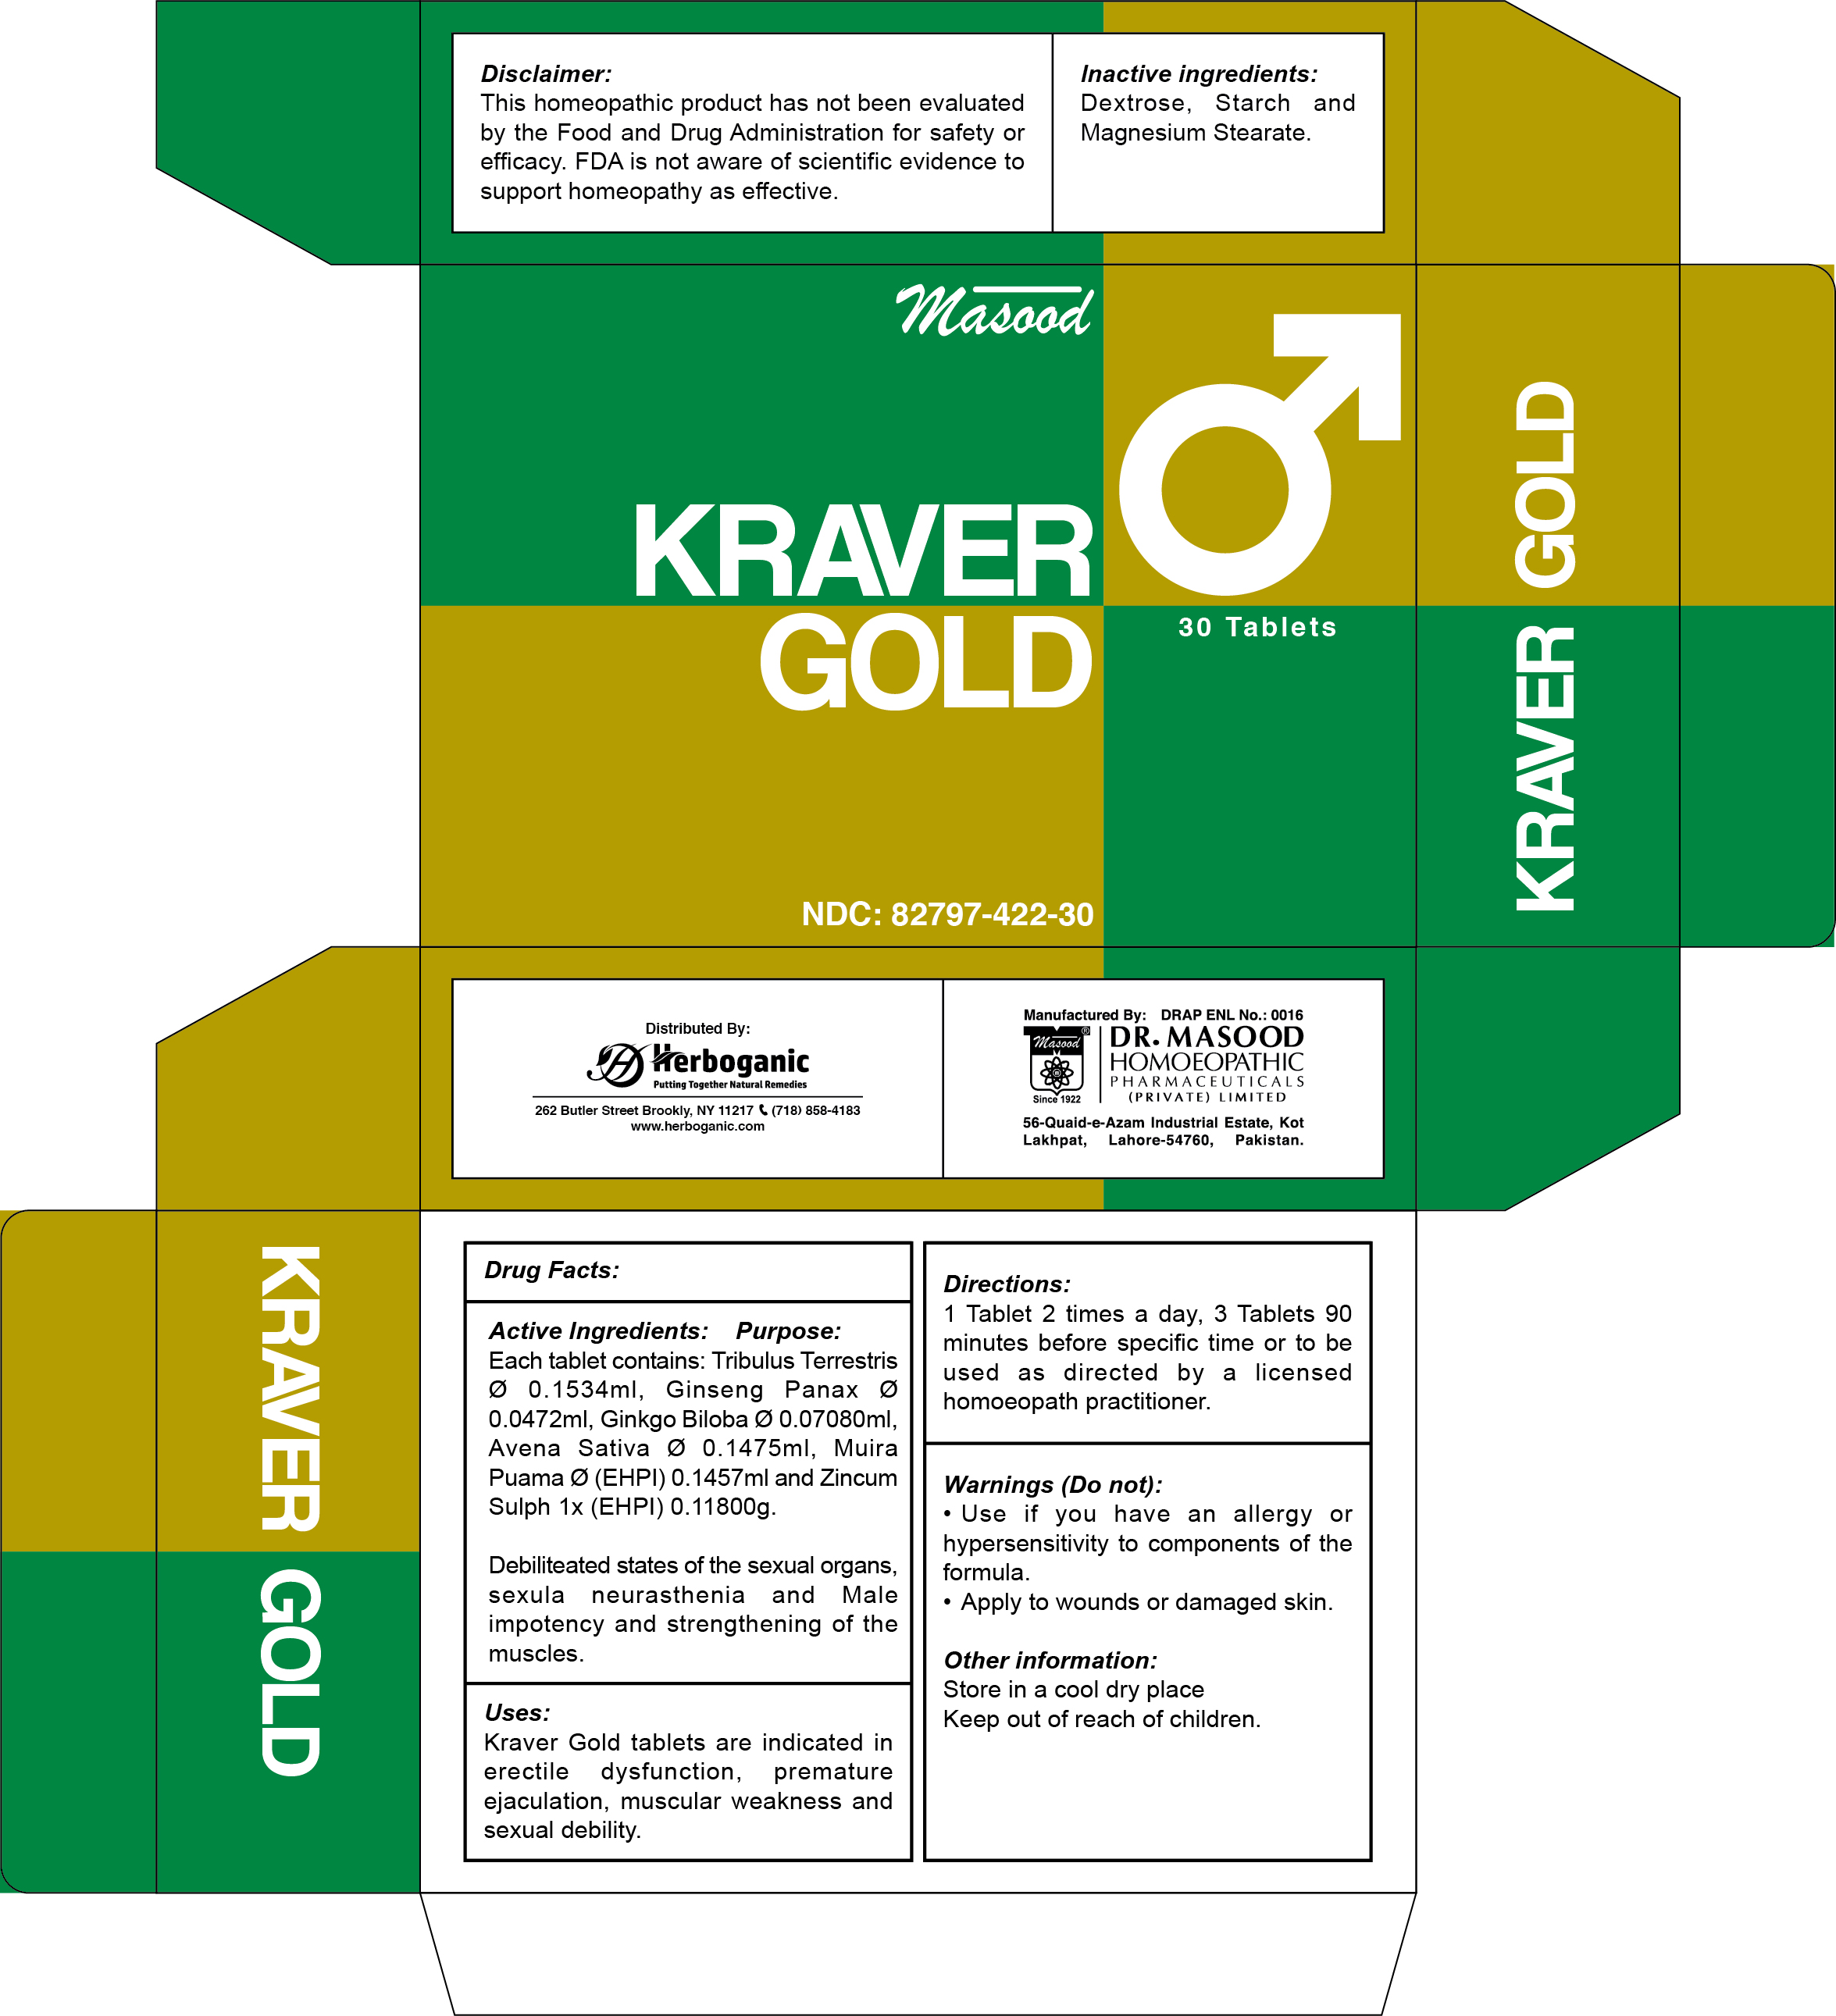 Kraver Gold Tablets